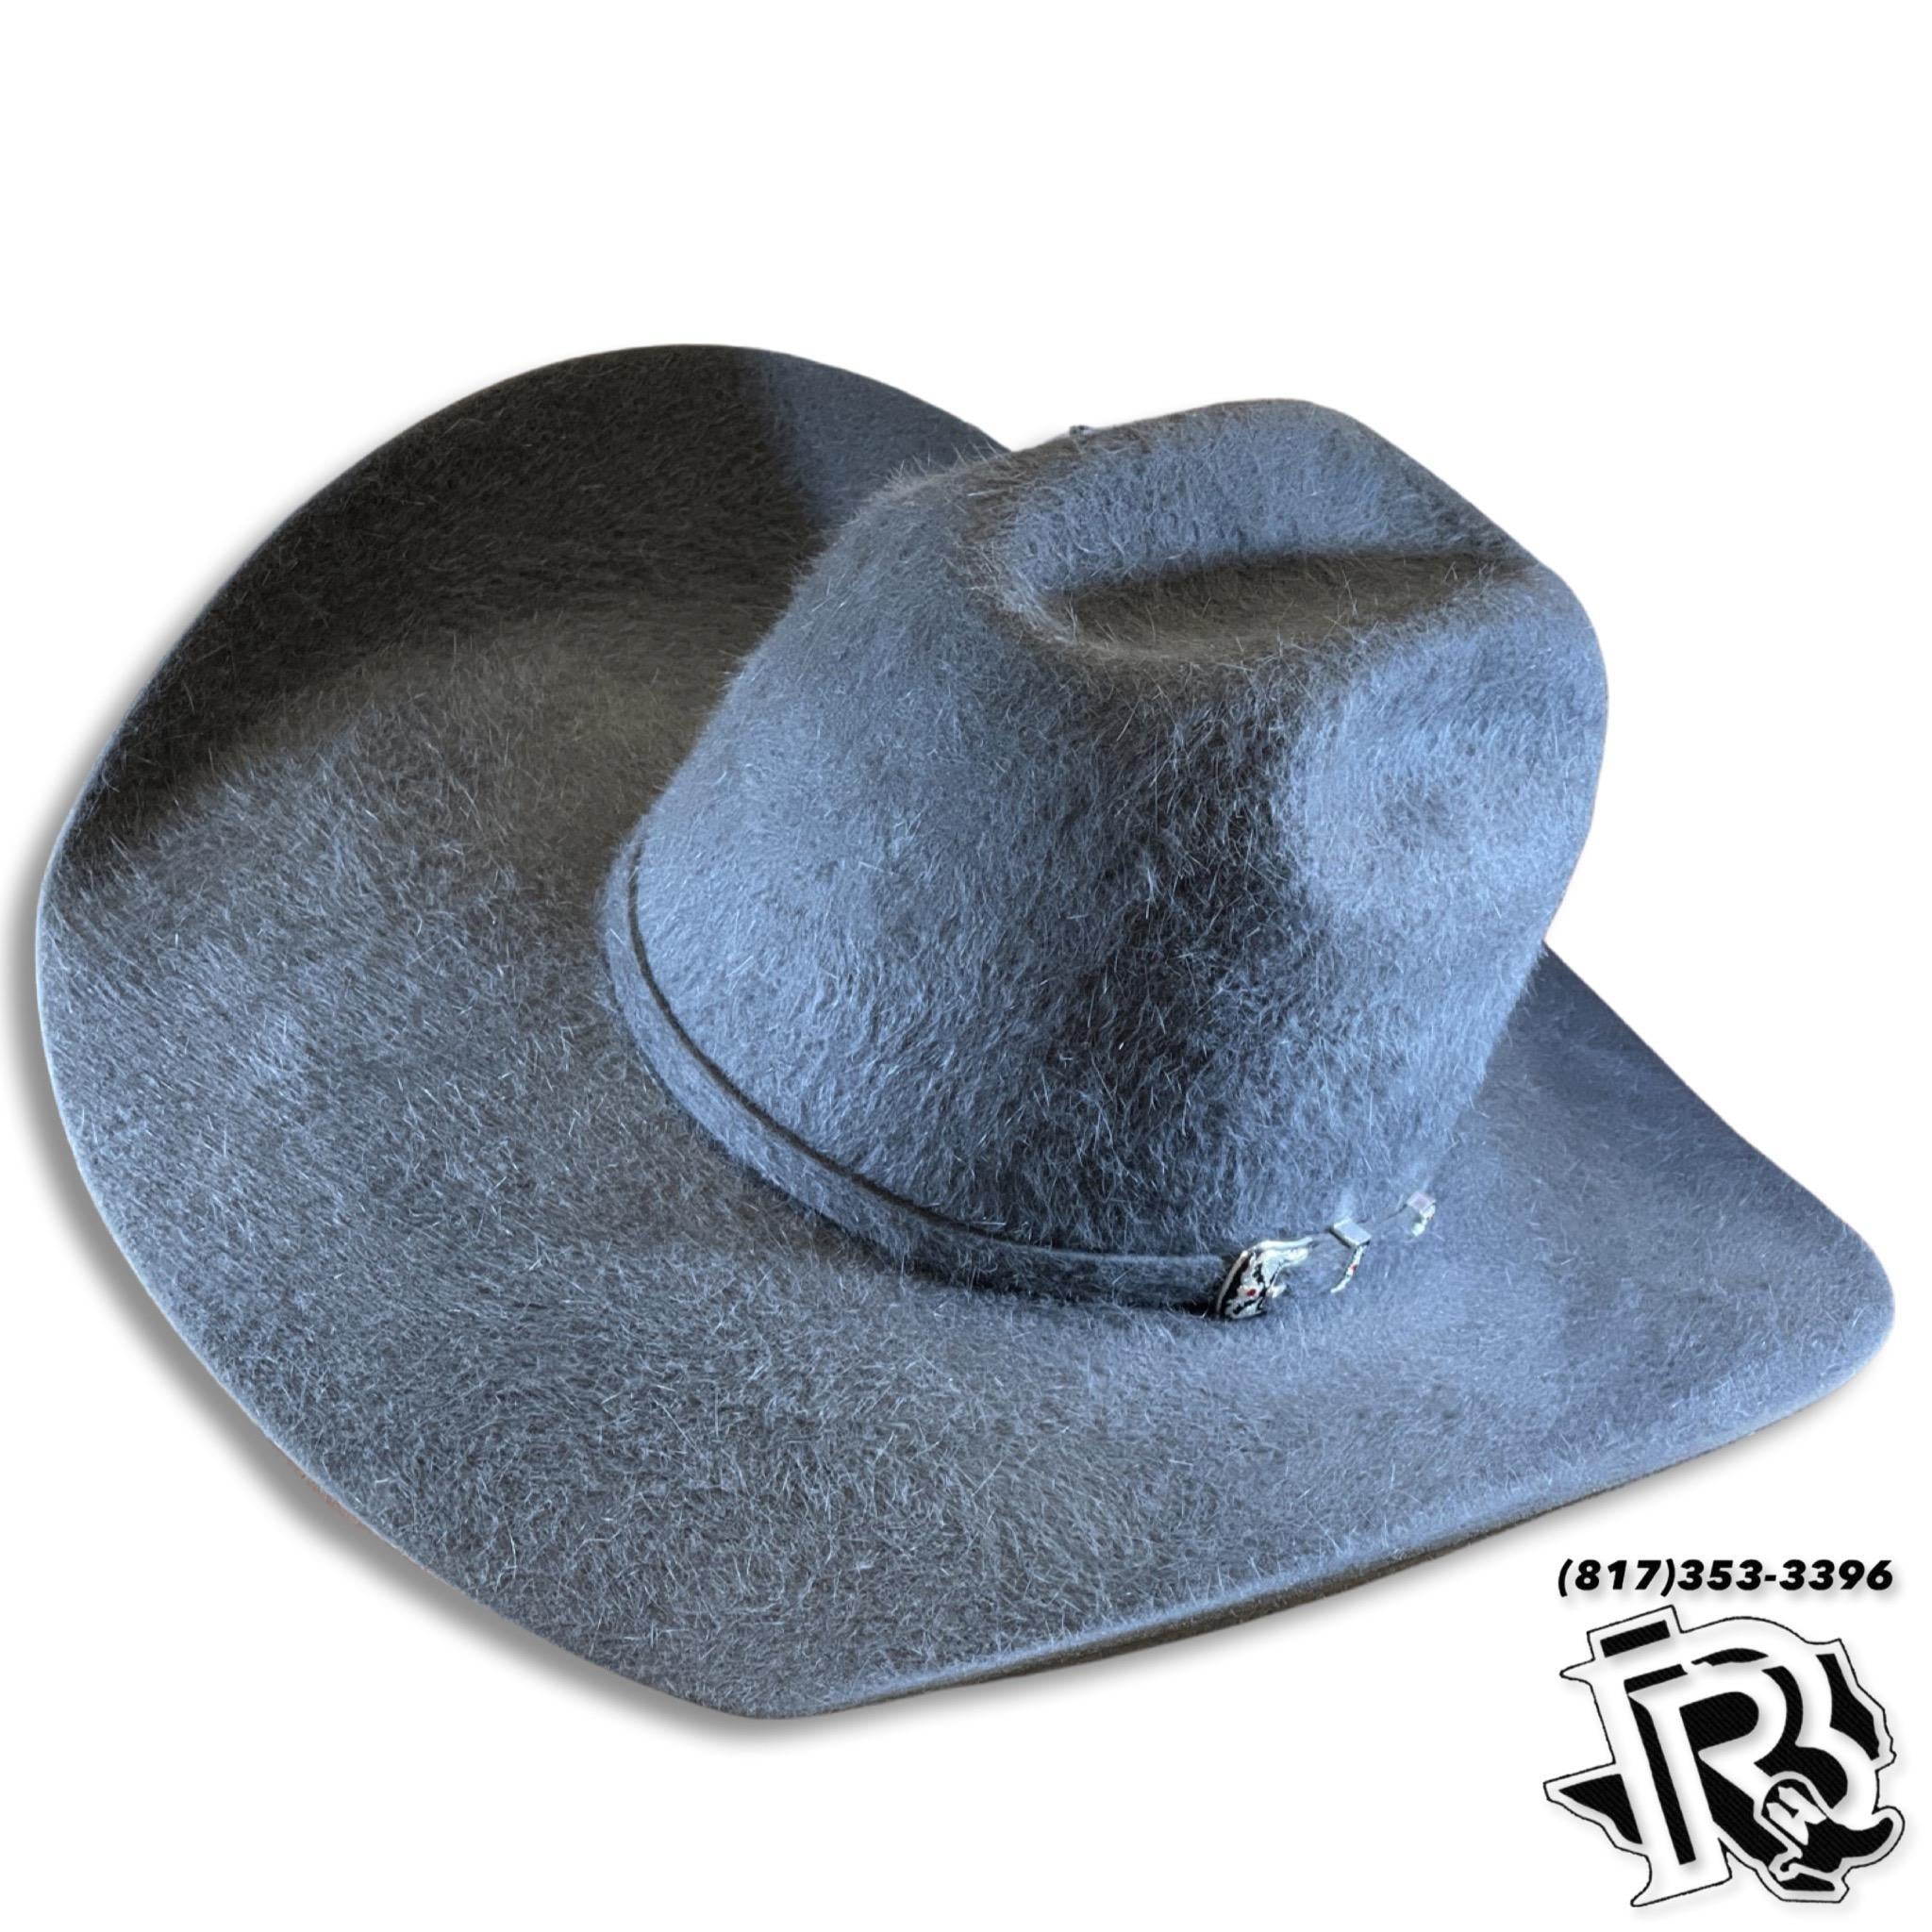 American Hat Co Felt 20x Grizzly Black 4 1/4 brim